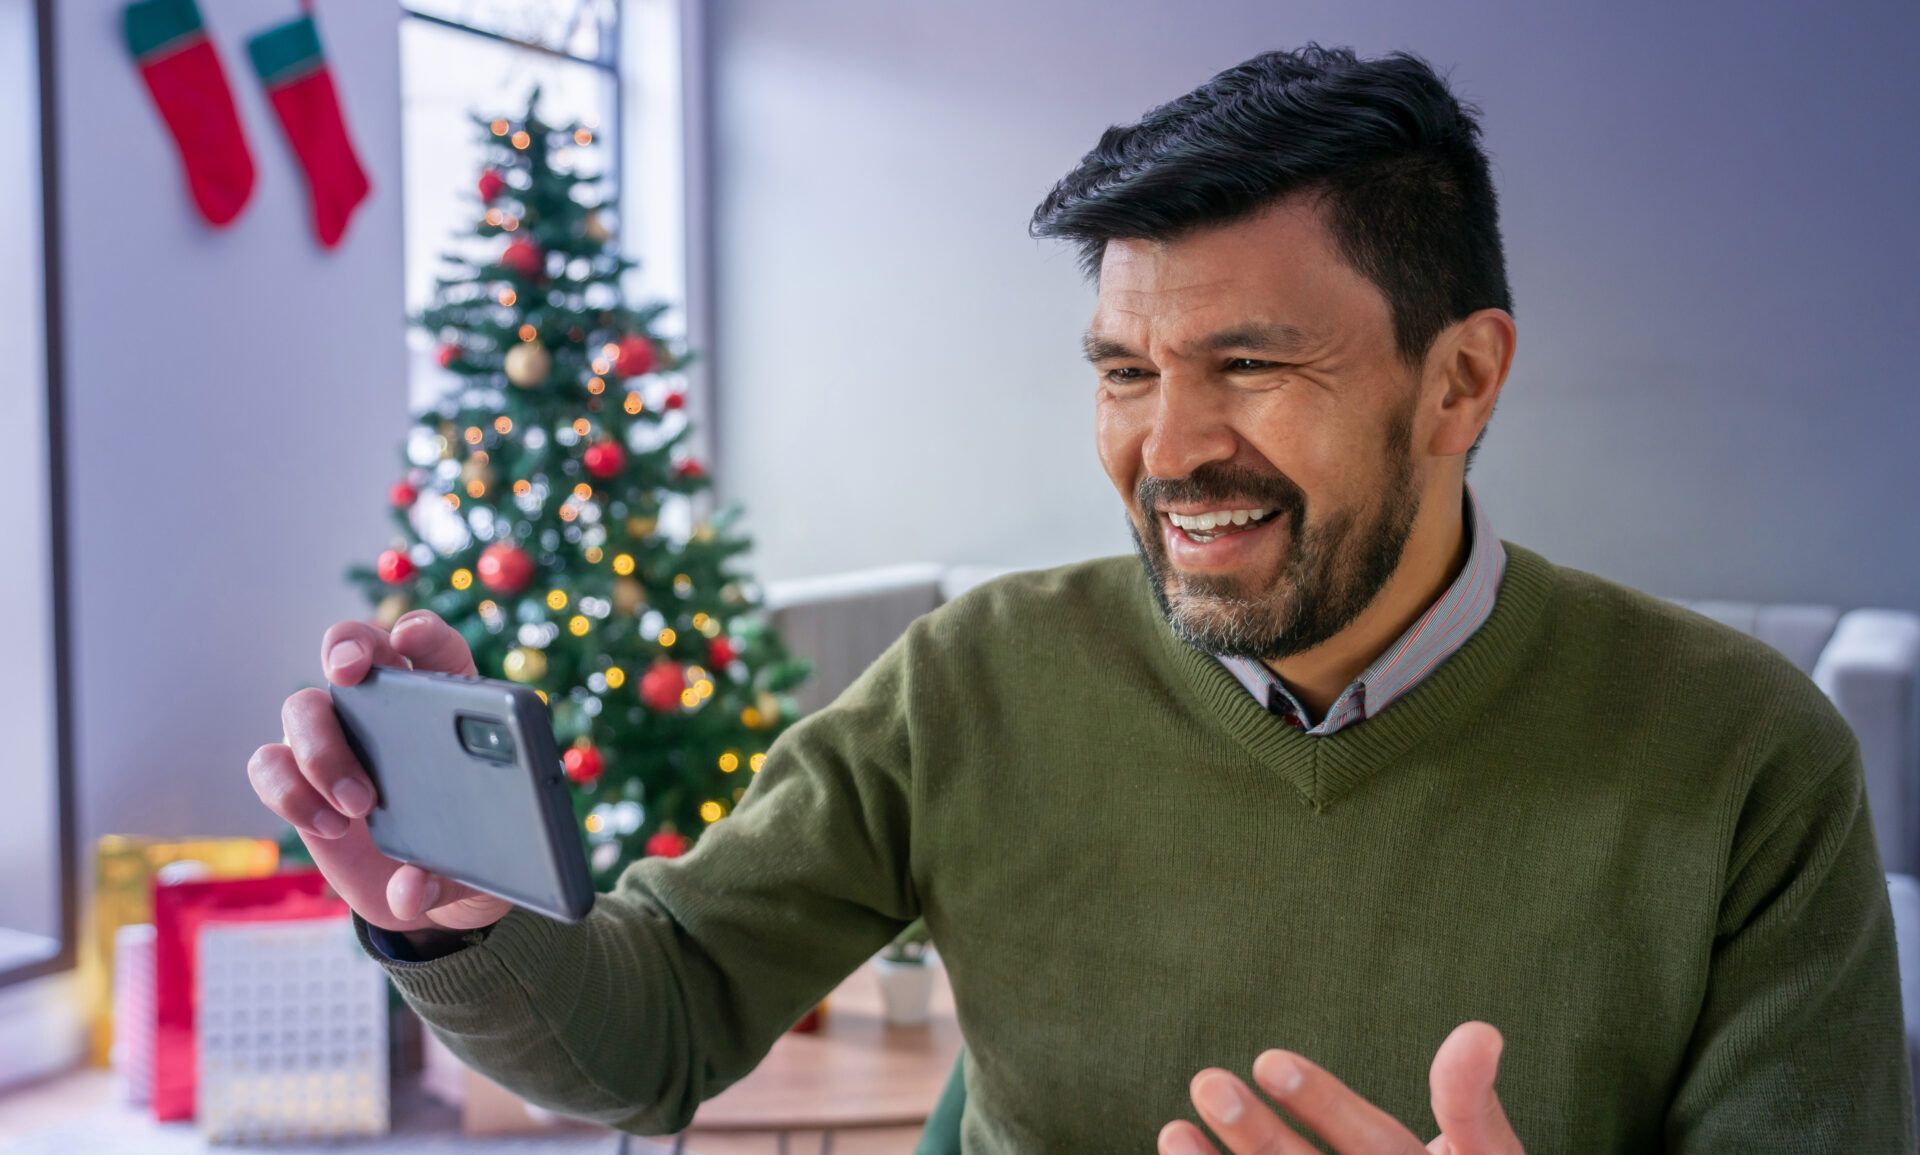 Mann mit Handy macht Video von sich vor Weihnachtsbaum